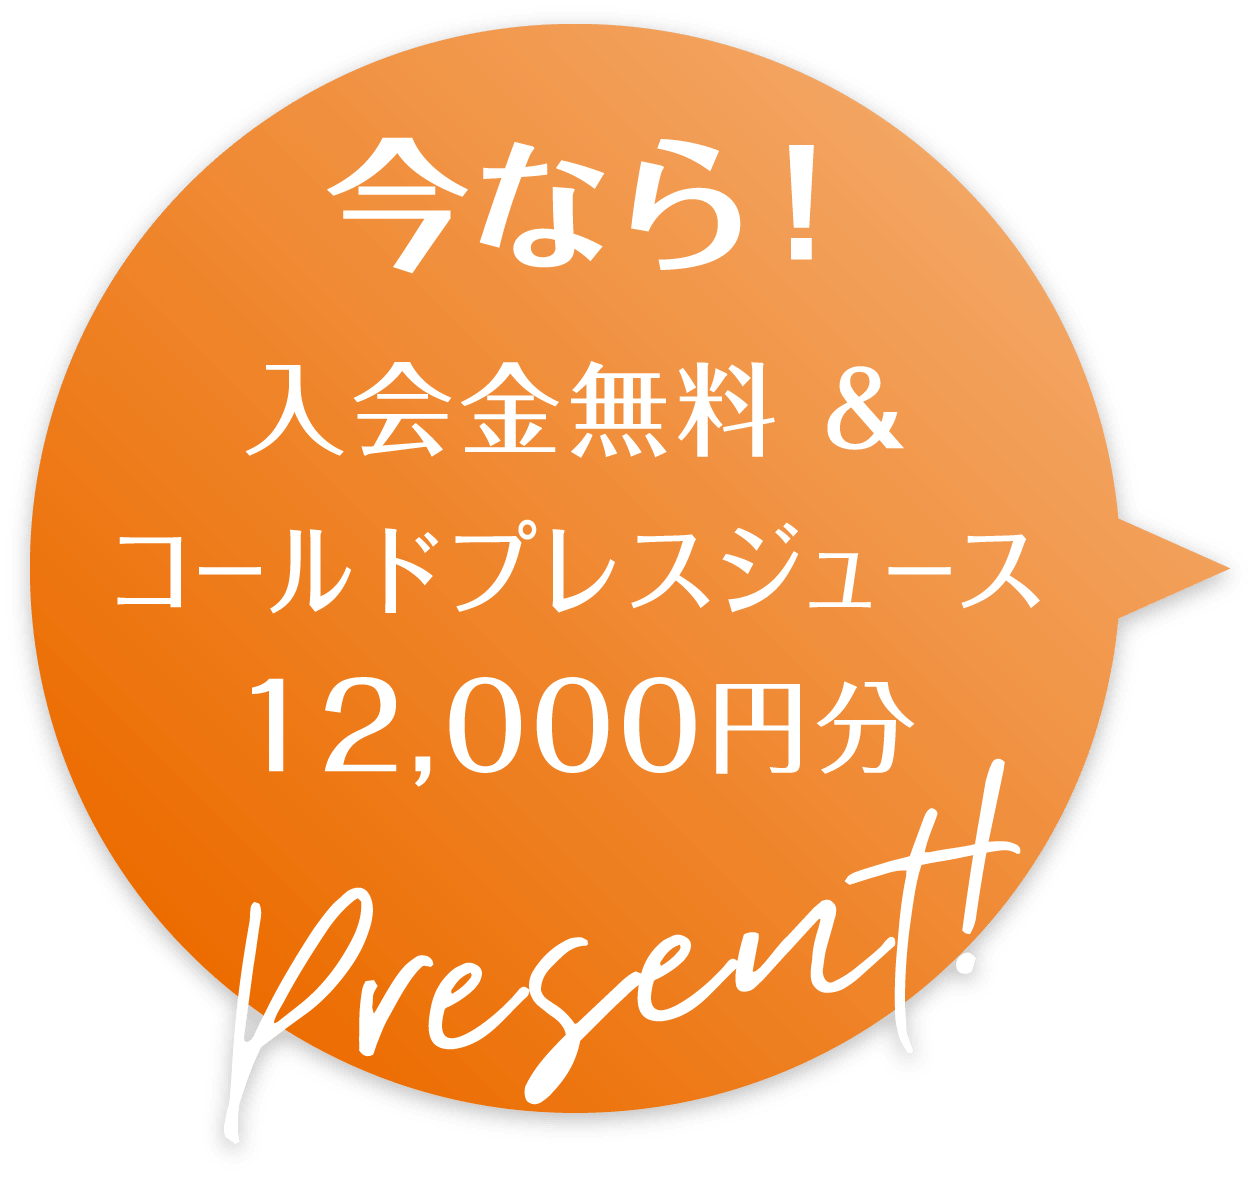 今なら!入会金無料andコールドプレスジュース12,000円分PRESENT!